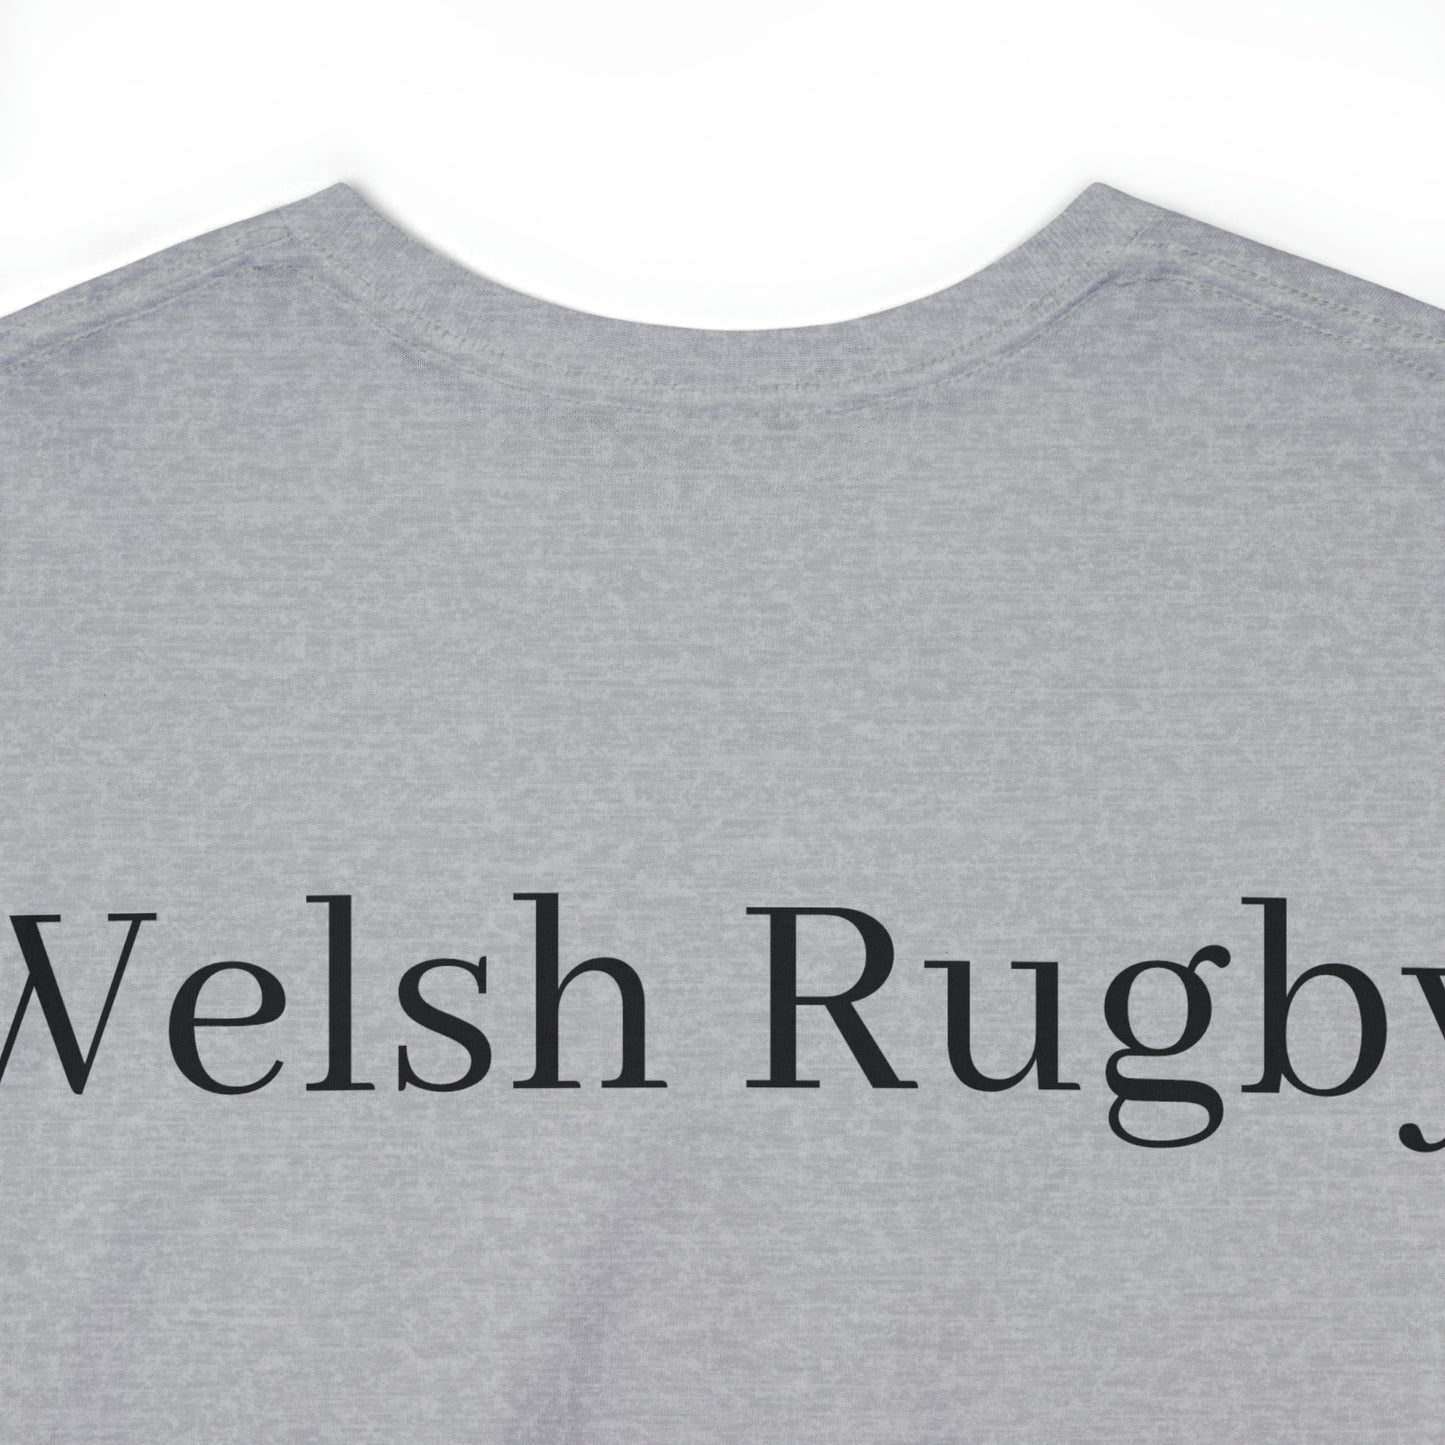 Ready Wales - light shirts